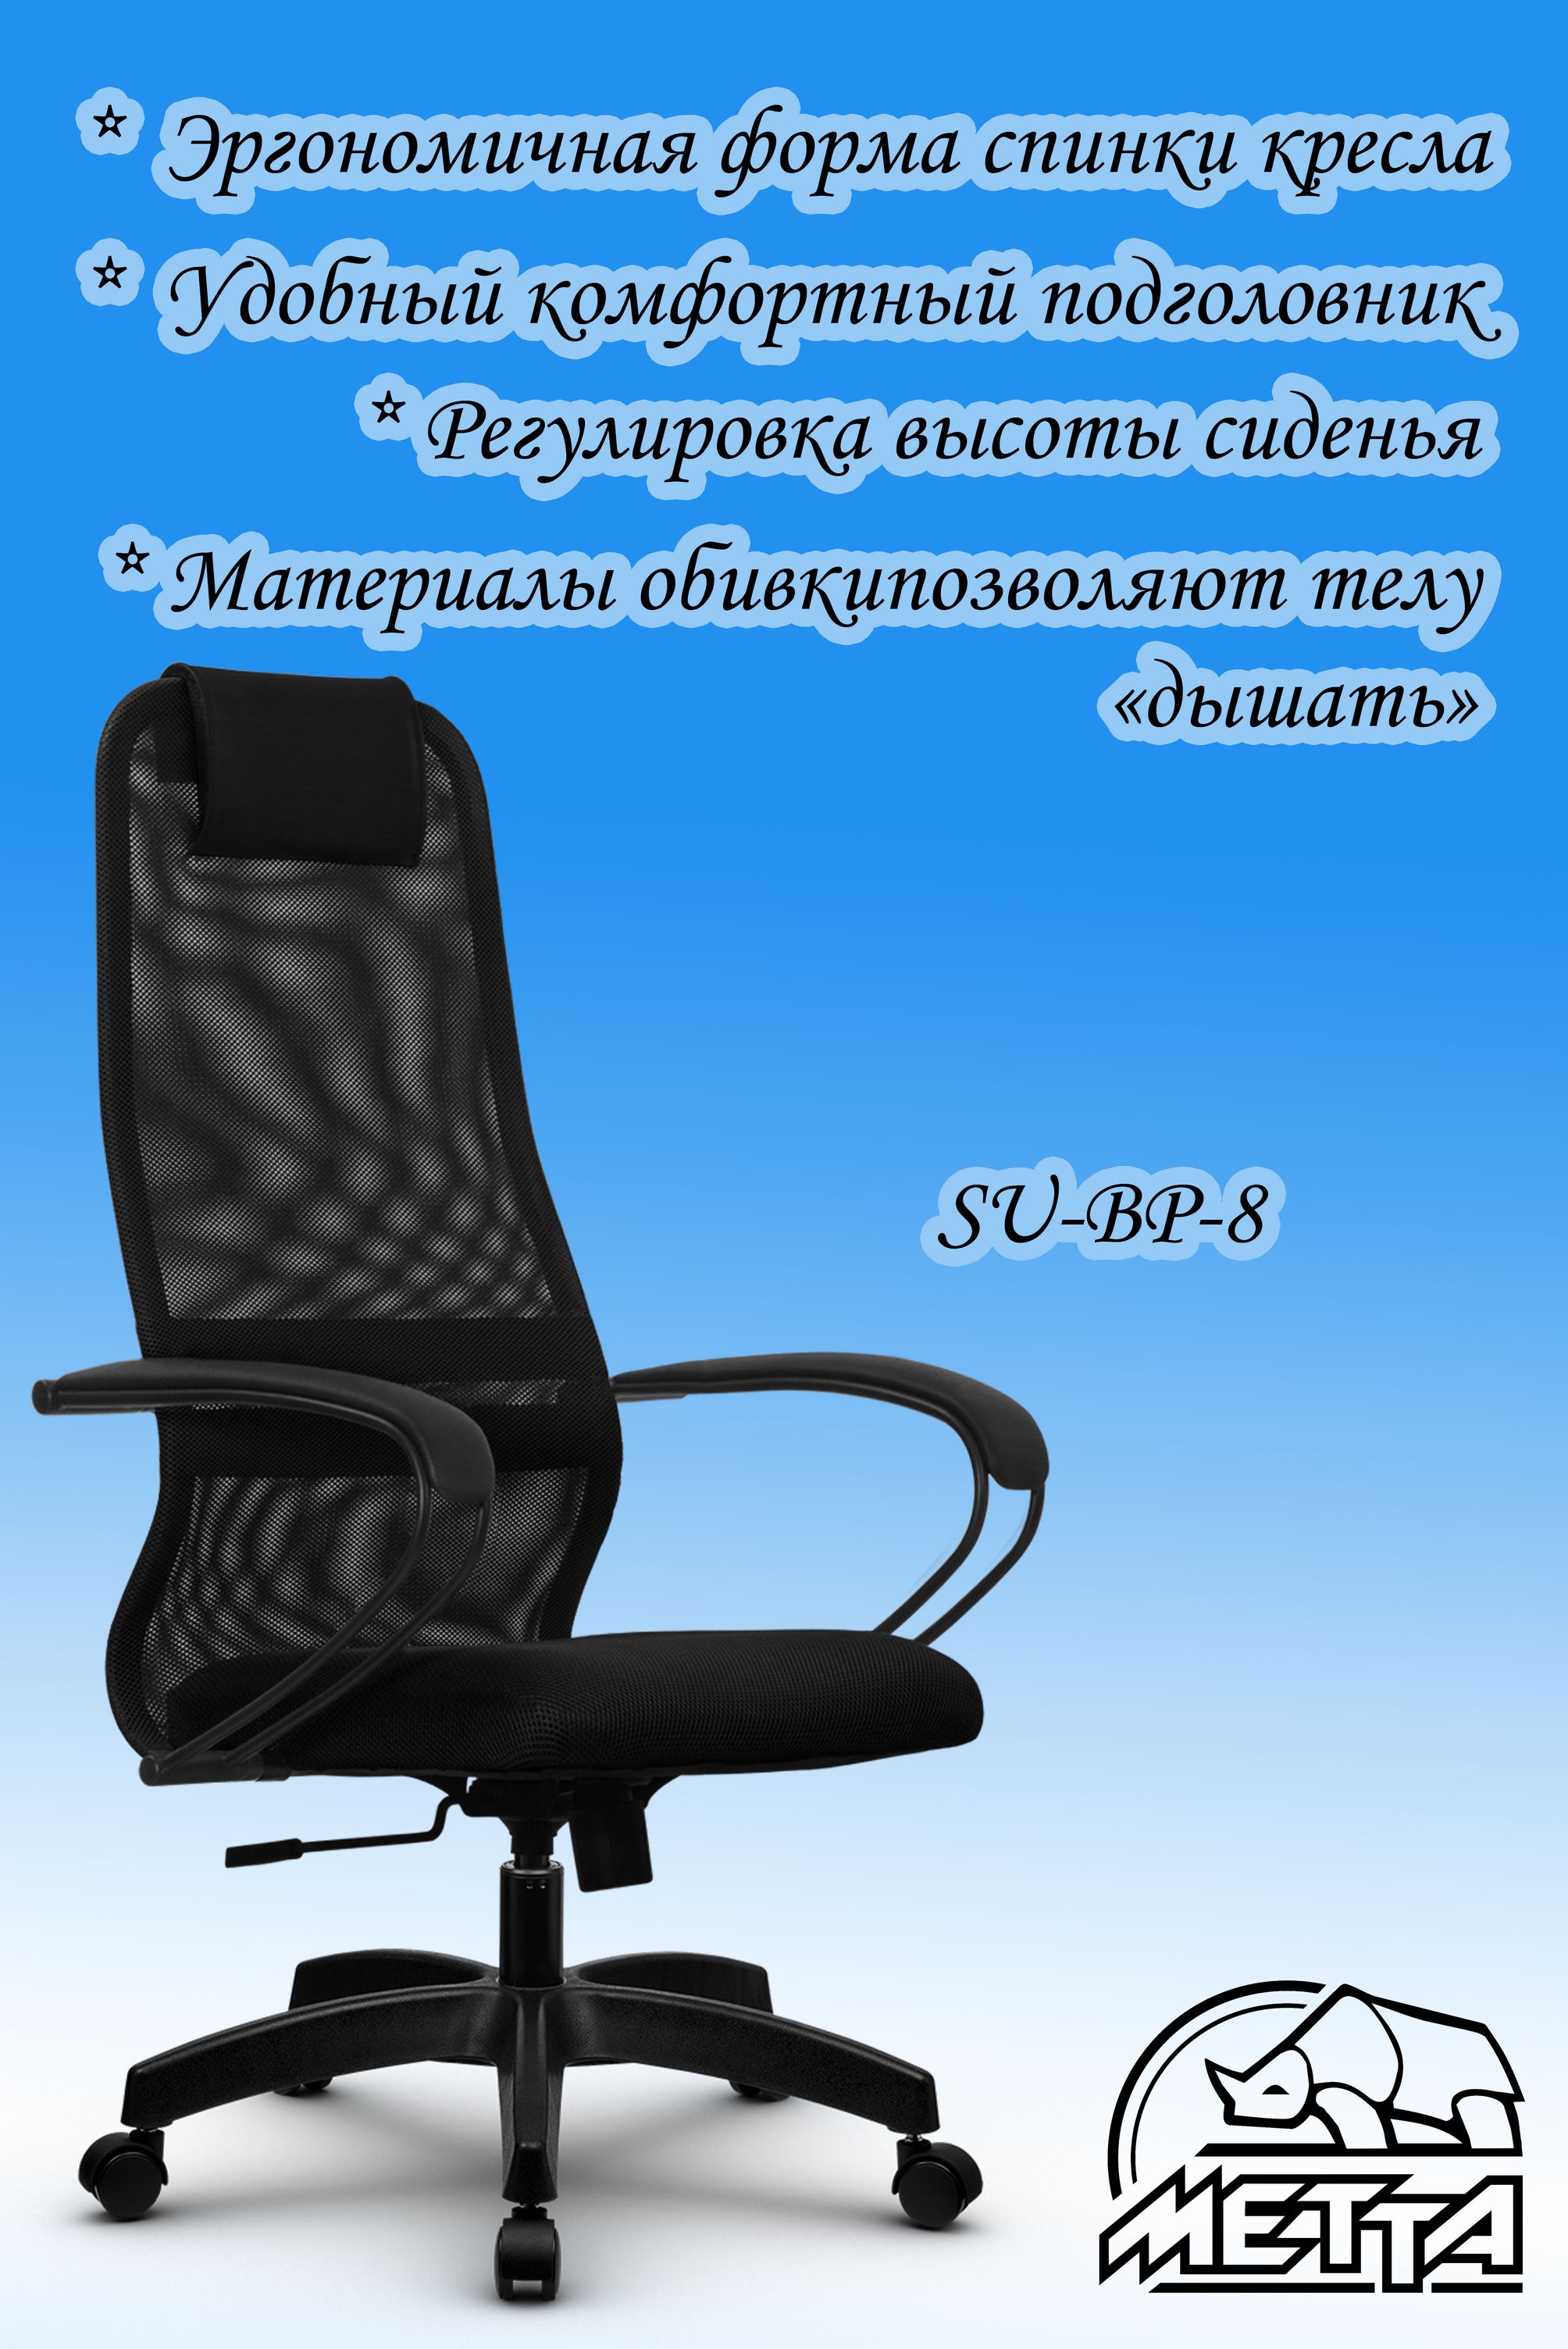 Компьютерное офисное кресло метта su bp 8 pl